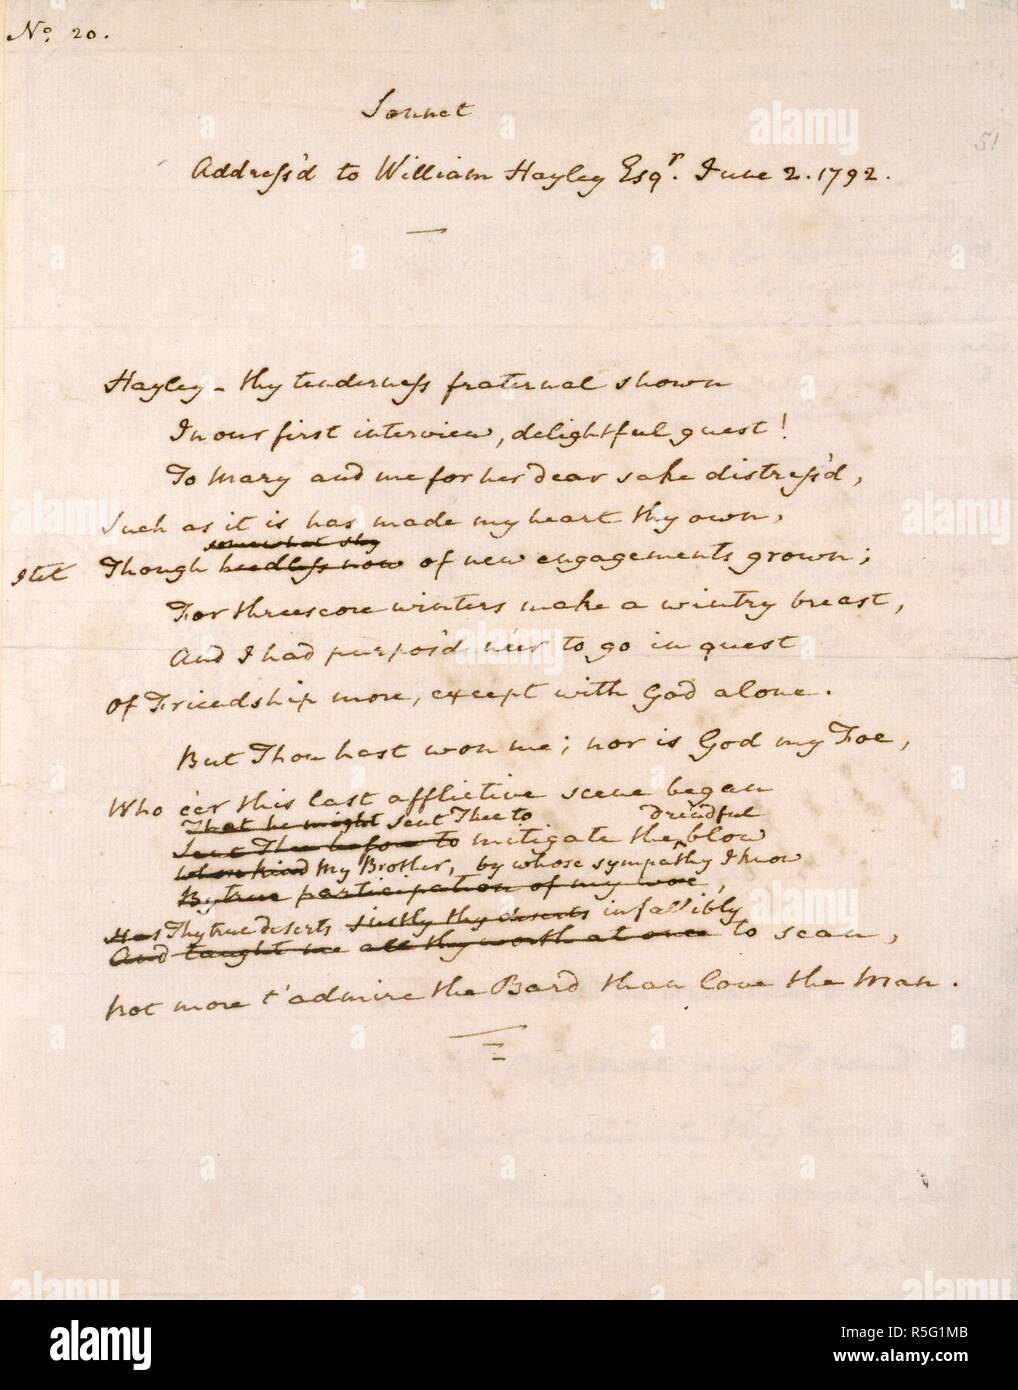 Sonnet de William Cowper. Poèmes de William Cowper. [Angleterre] Bucks co.,  Weston ; 1792. [Ensemble] folio manuscrit projet de Cowper's sonnet sur  l'amitié, à l'adresse de la poète William Hayley. En date